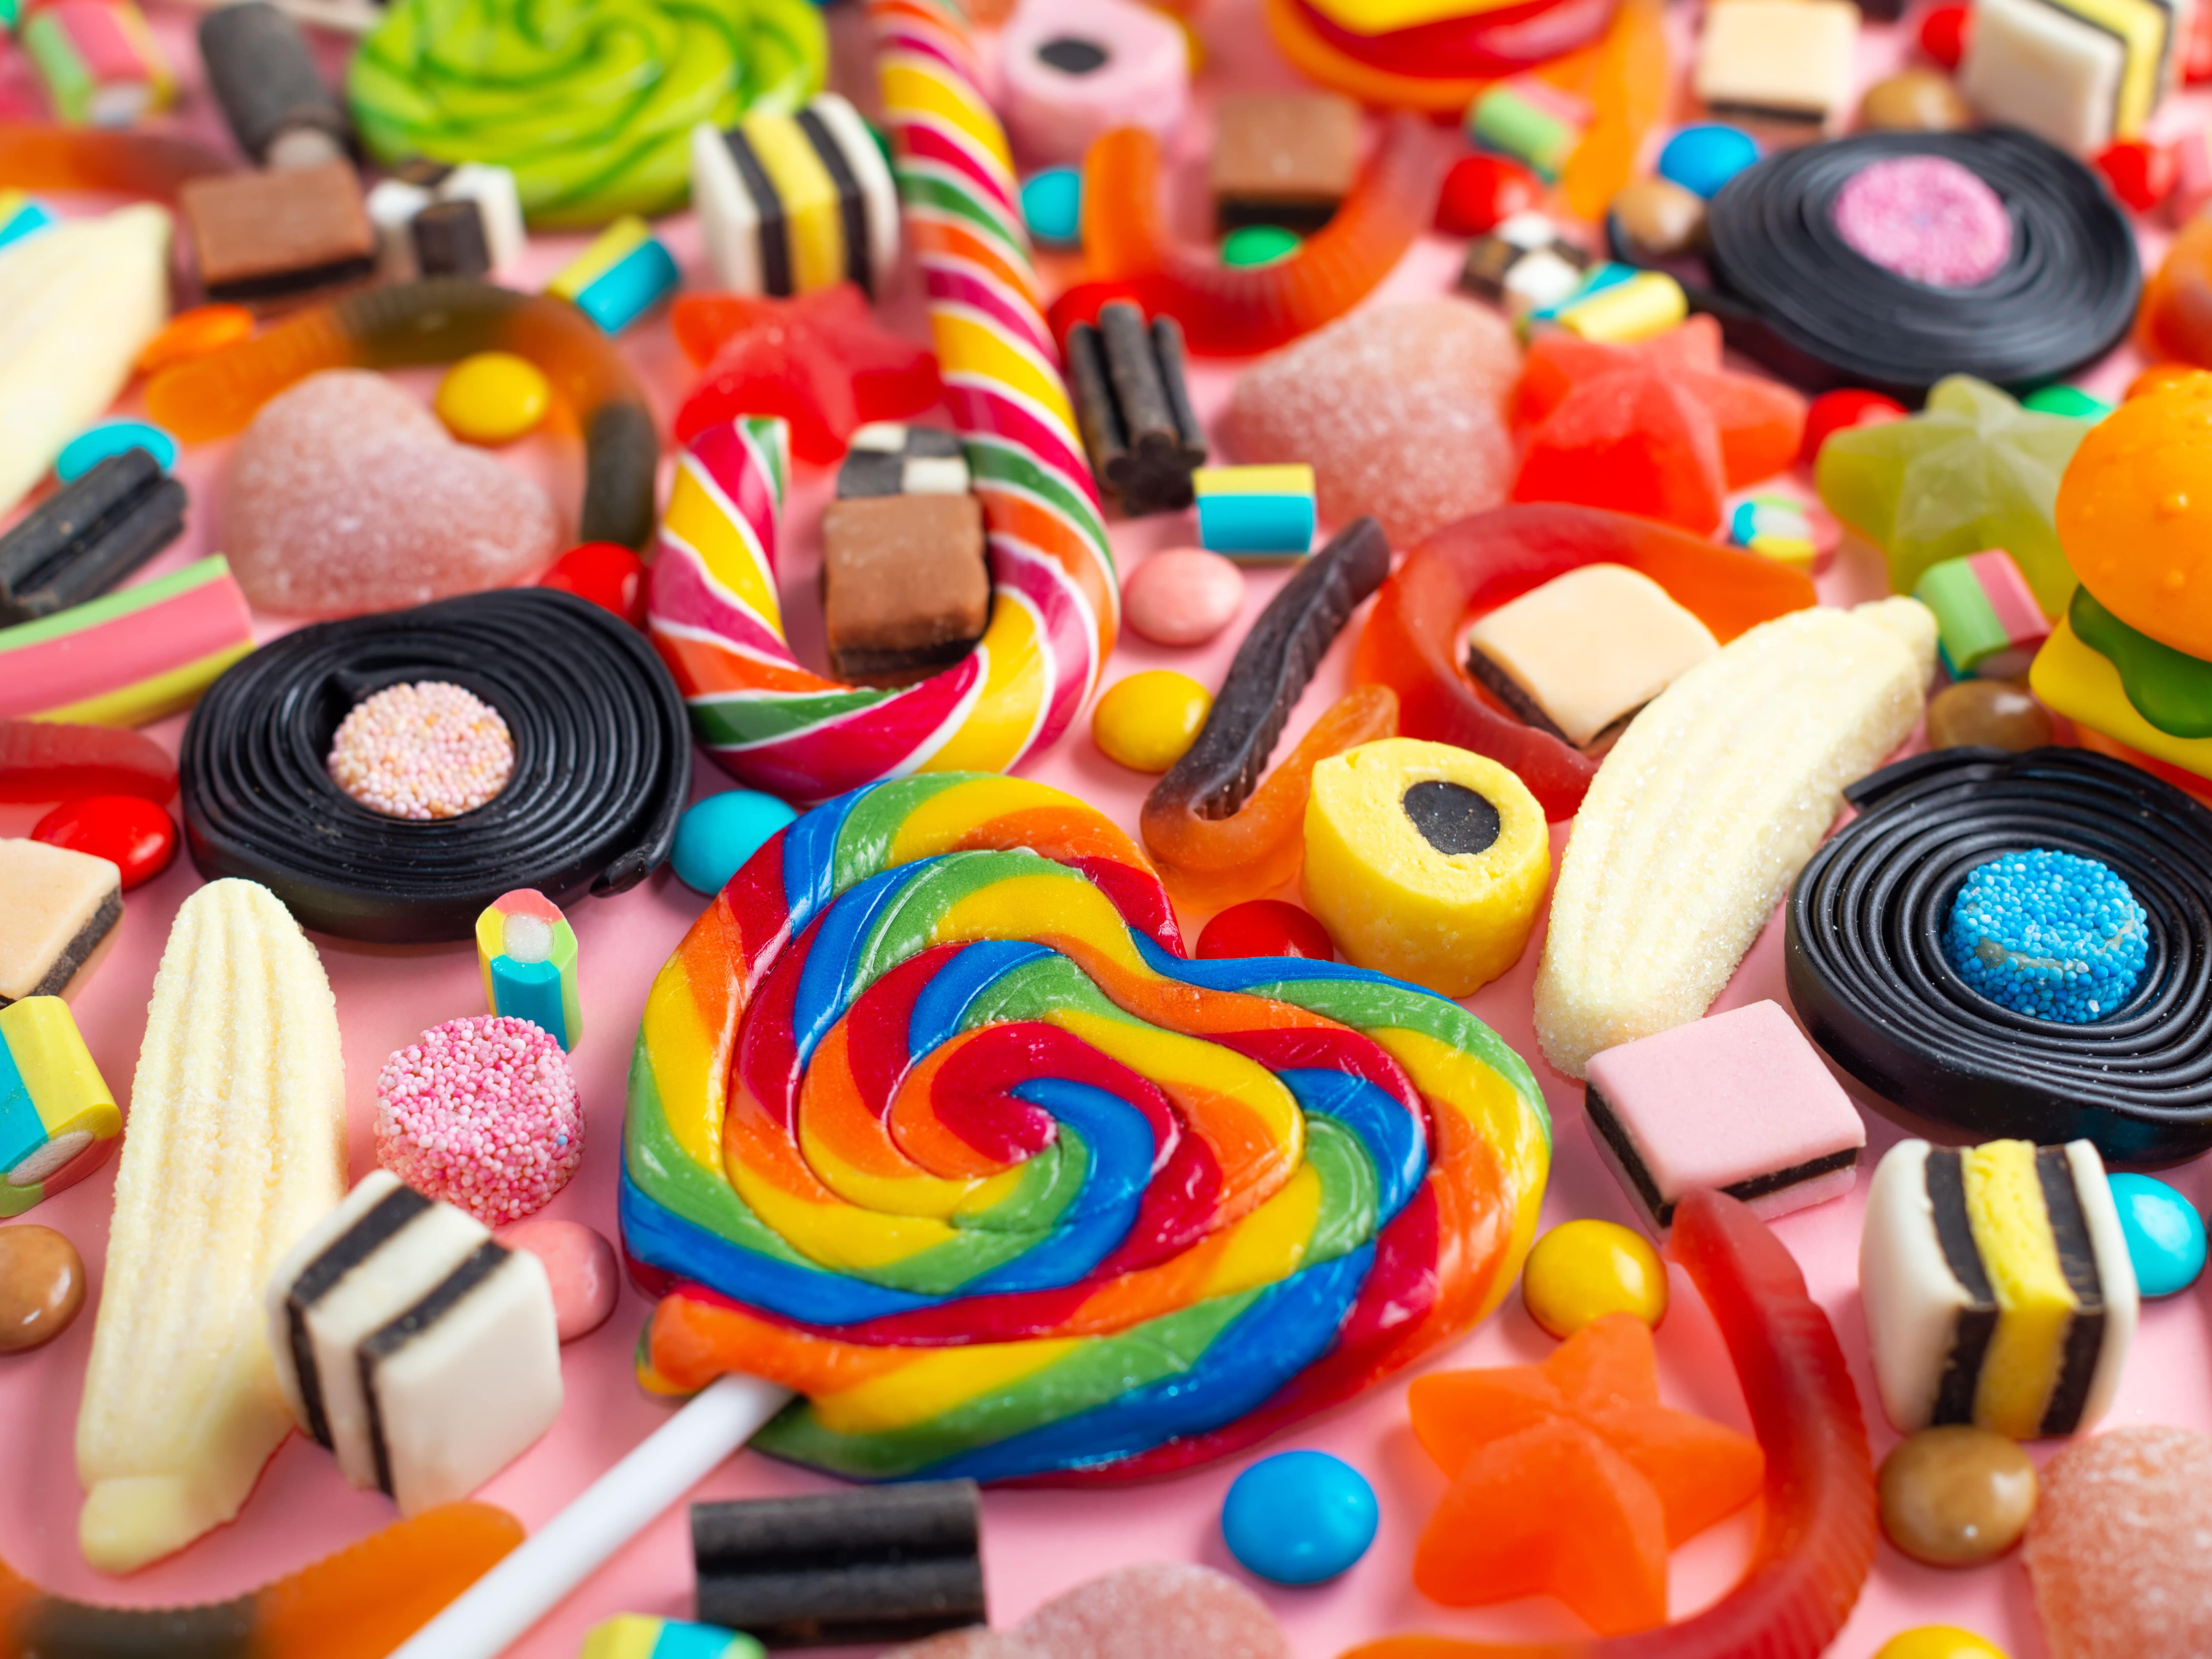 Manger régulièrement ces bonbons peut être dangereux à terme pour votre  santé !